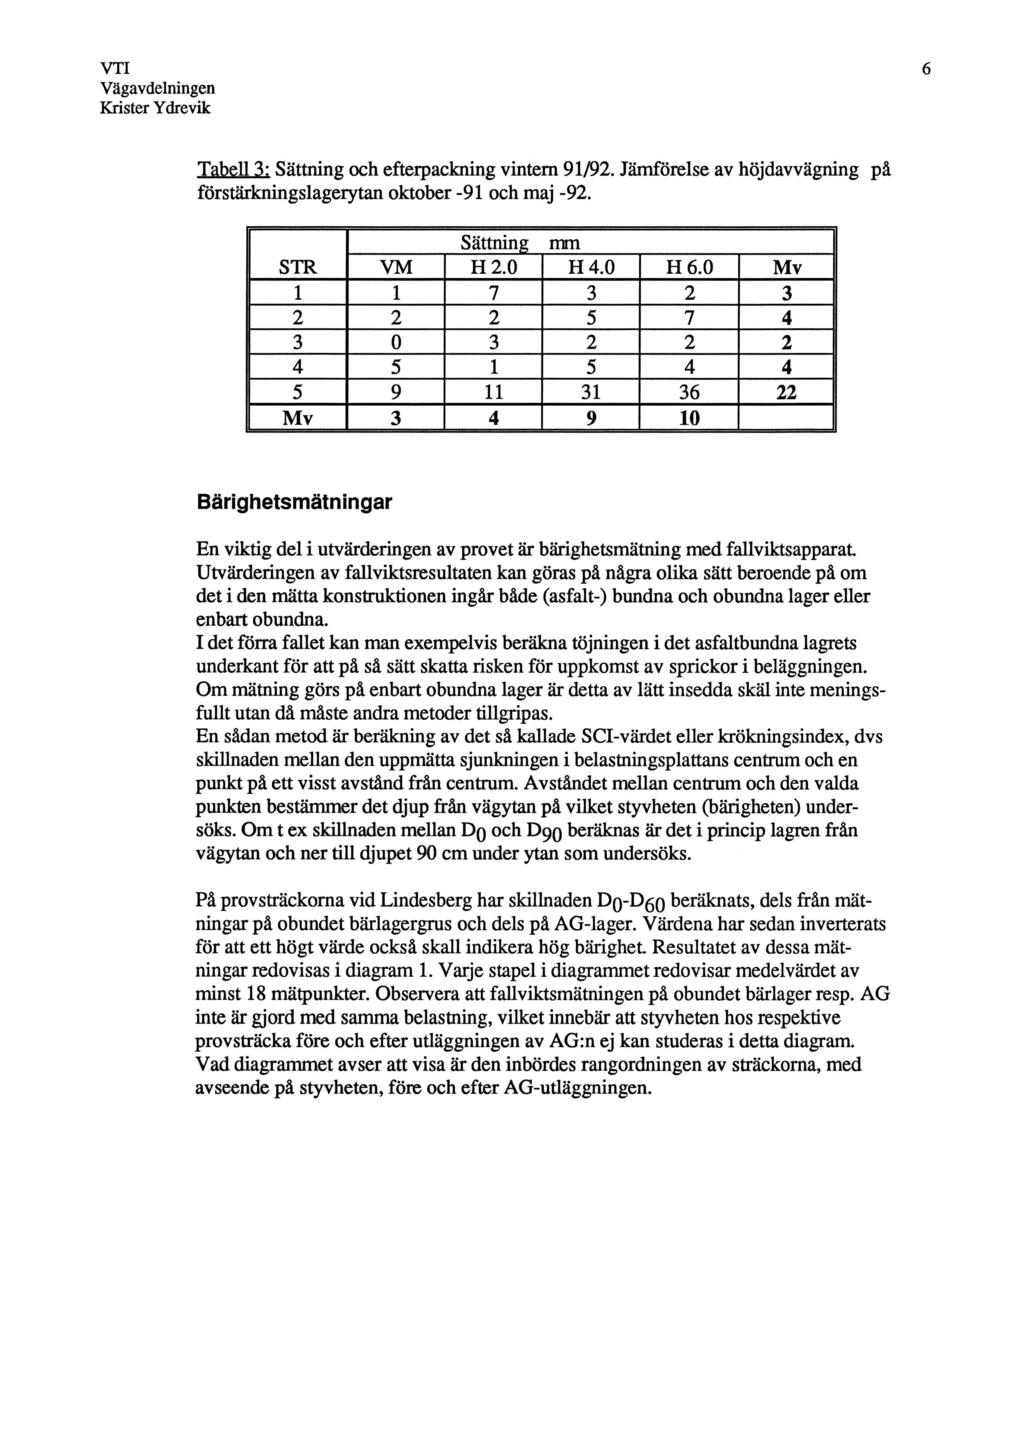 Tabell 3: Sättning och efterpackning vintern 91/92. Jämförelse av höjdavvägning på förstärkningslagerytan oktober -91 och maj -92. Sättning mm STR VM H 2.0 H 4.0 H 6.